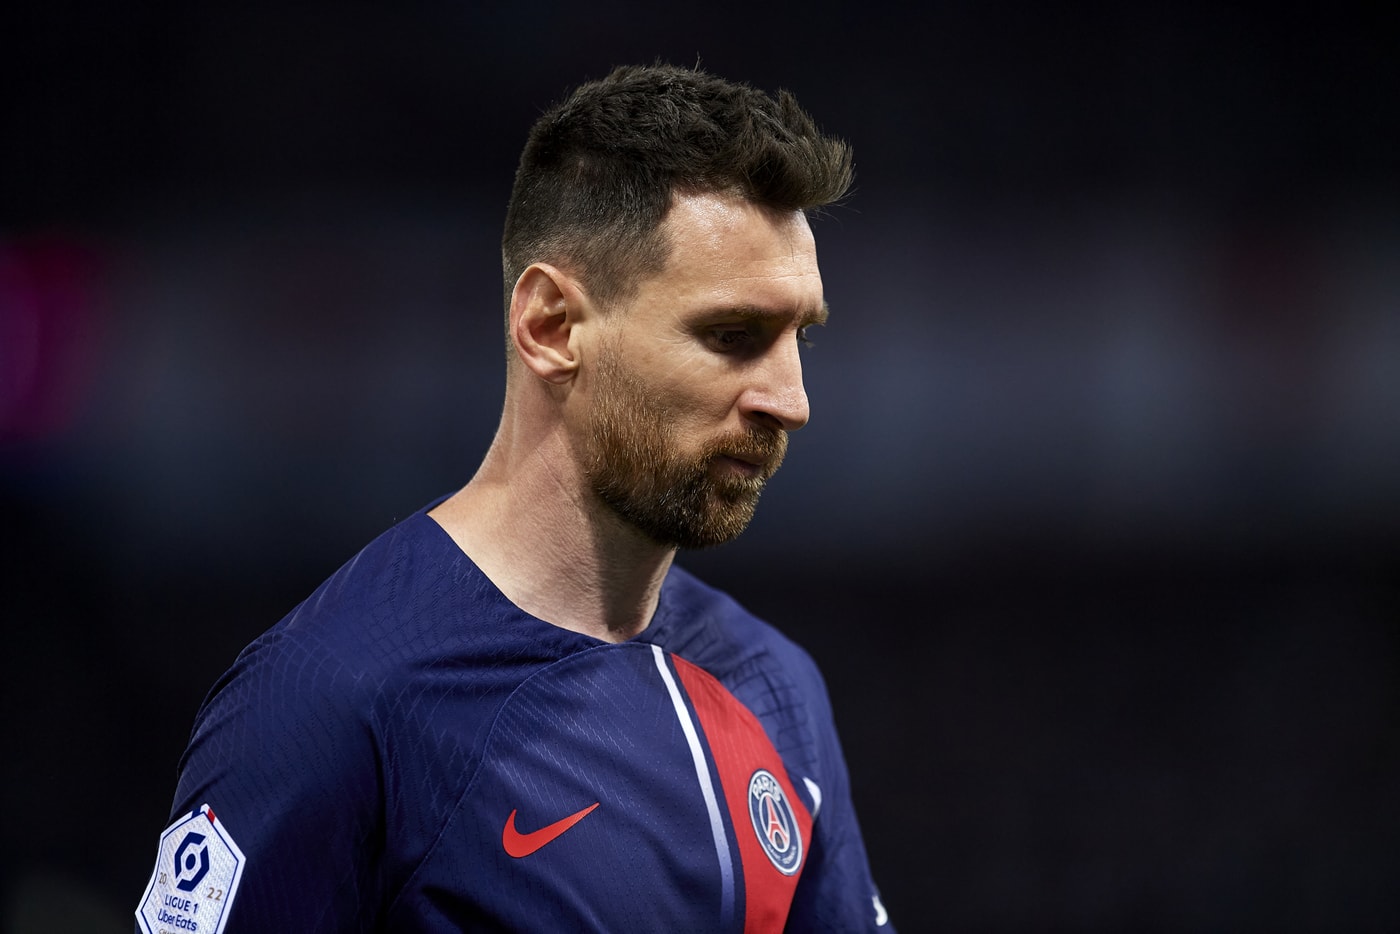 梅西 Lionel Messi 正式告别法甲 Paris Saint-Germain 巴黎圣日耳曼足球俱乐部